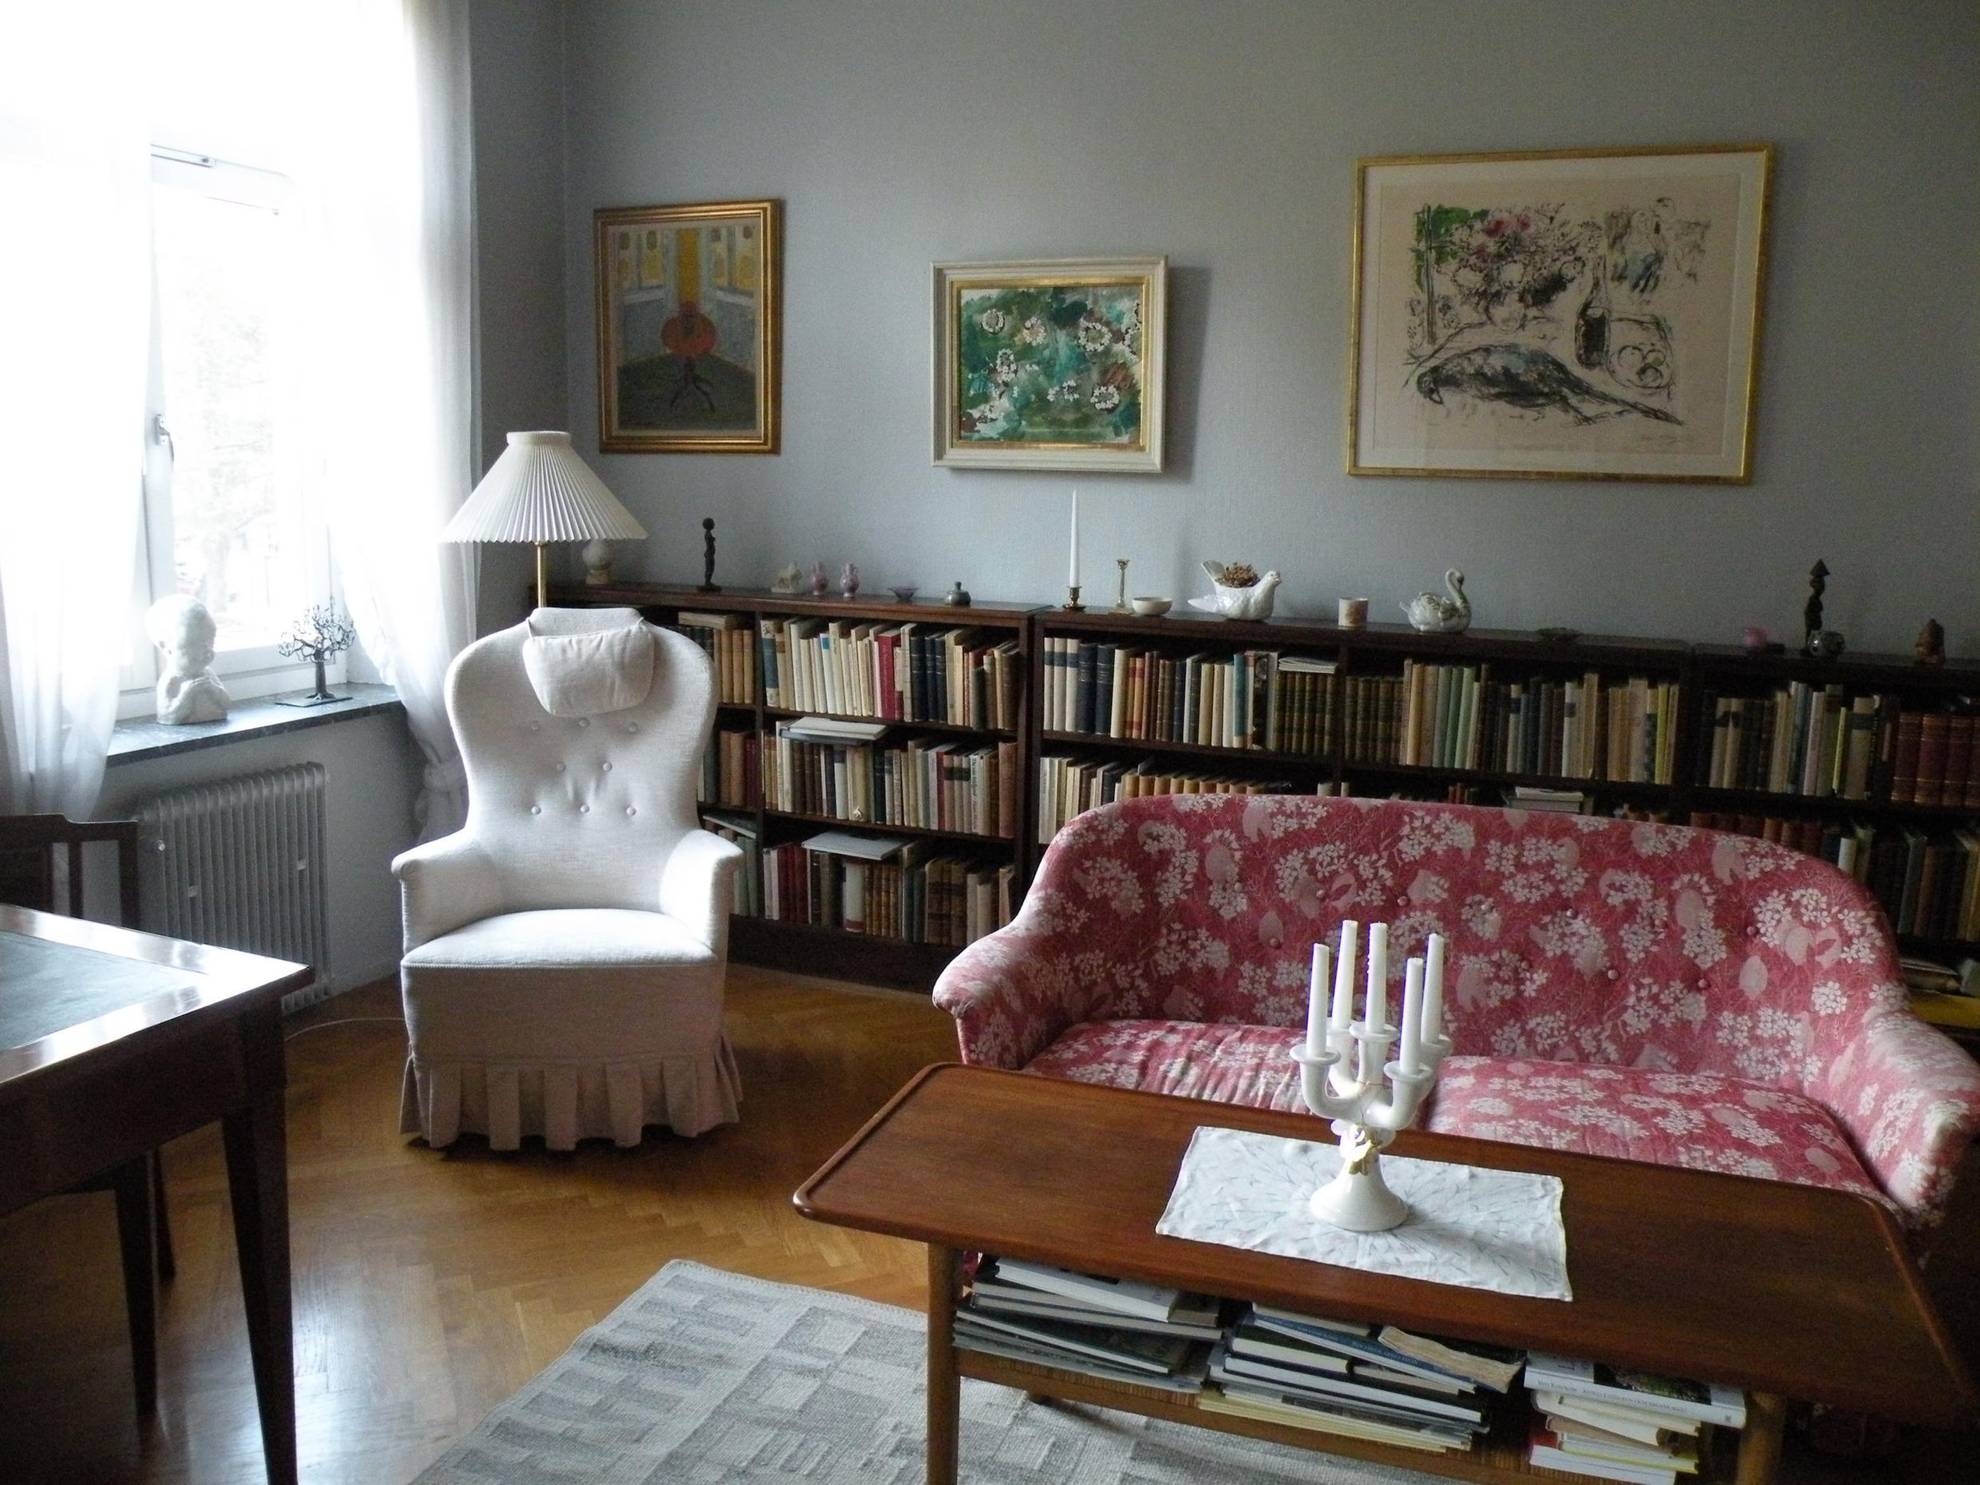 De woonkamer van Astrid Lindgren, met een leesstoel, een grote boekenplank met bibelots erop, een rode bank met patroon en een paar schilderijen aan de muur.